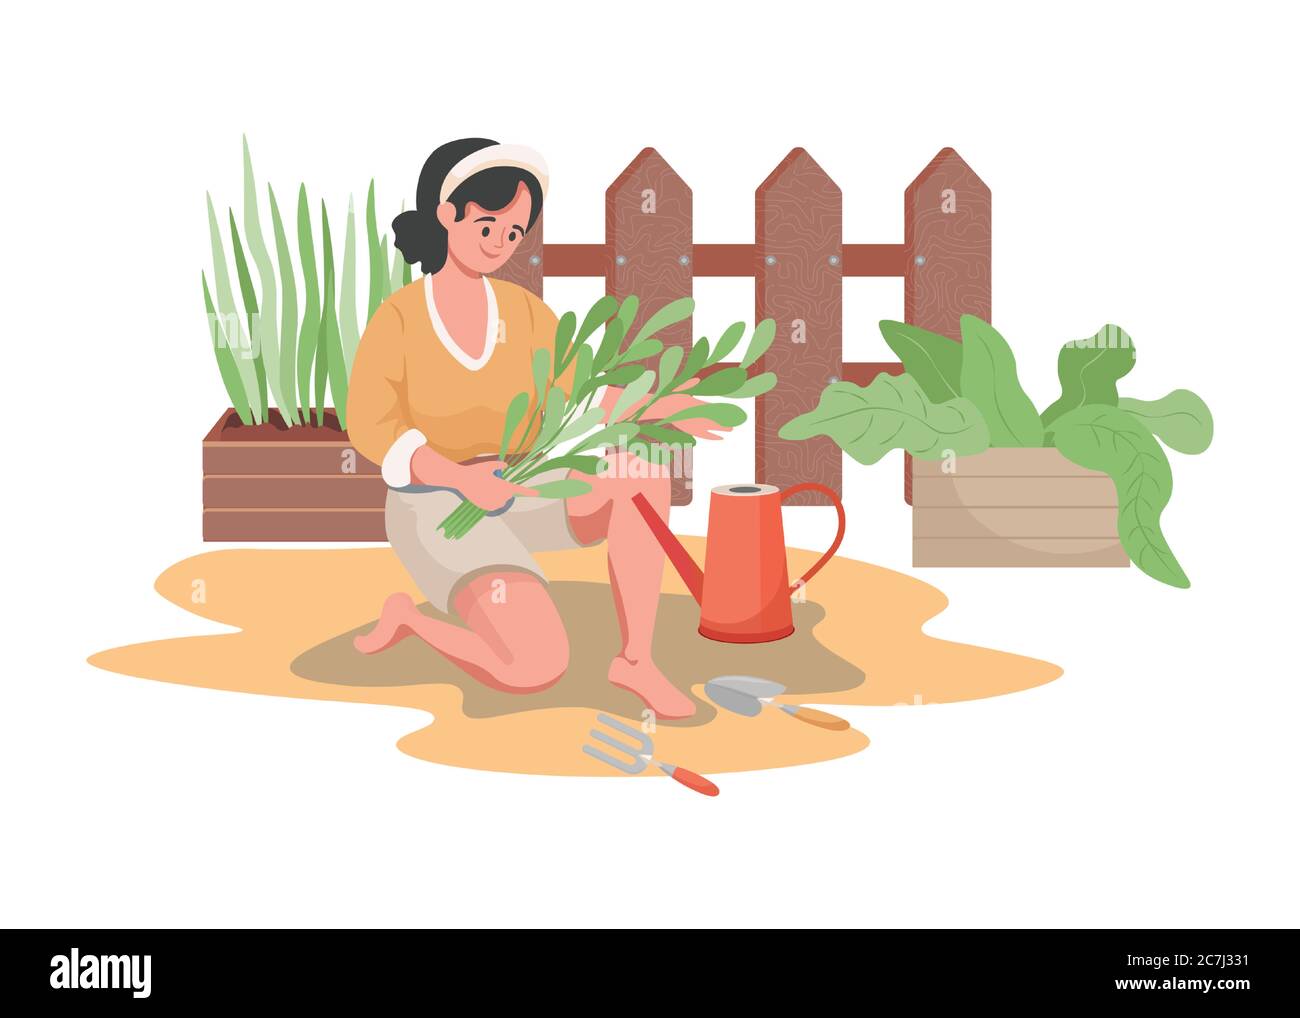 Glücklich lächelnde Frau Pflanzen und Bewässerung Garten Blumen oder Gemüse Vektor flache Illustration. Sommer Gartenarbeit, Landwirtschaft Gärtner Hobby, entspannendes Wochenende in der Natur Konzept. Stock Vektor